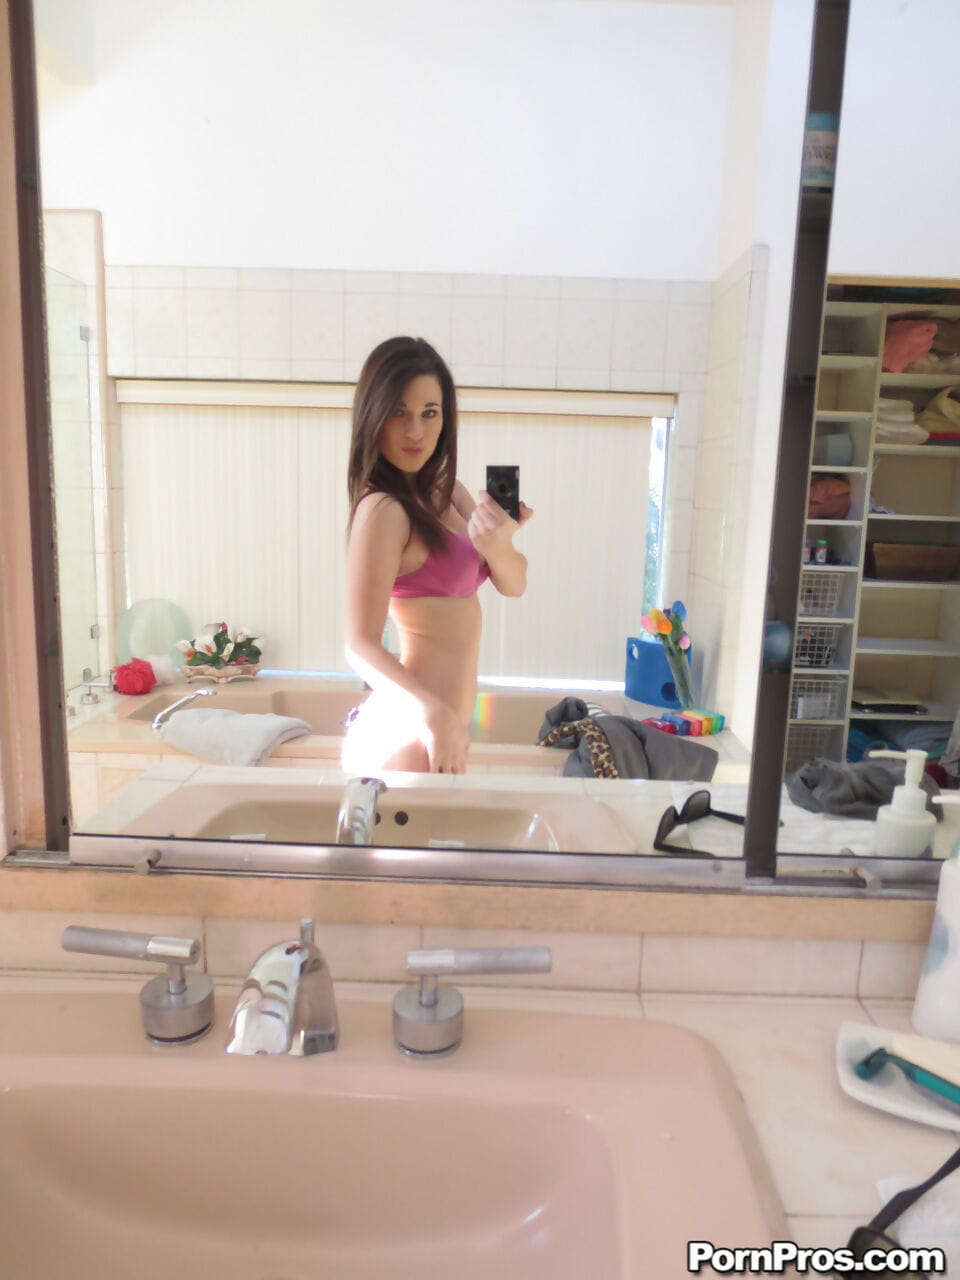 लेसी channing flaunts उसके प्राकृतिक स्तन हो जाता है नग्न और लेता है सेक्सी selfies